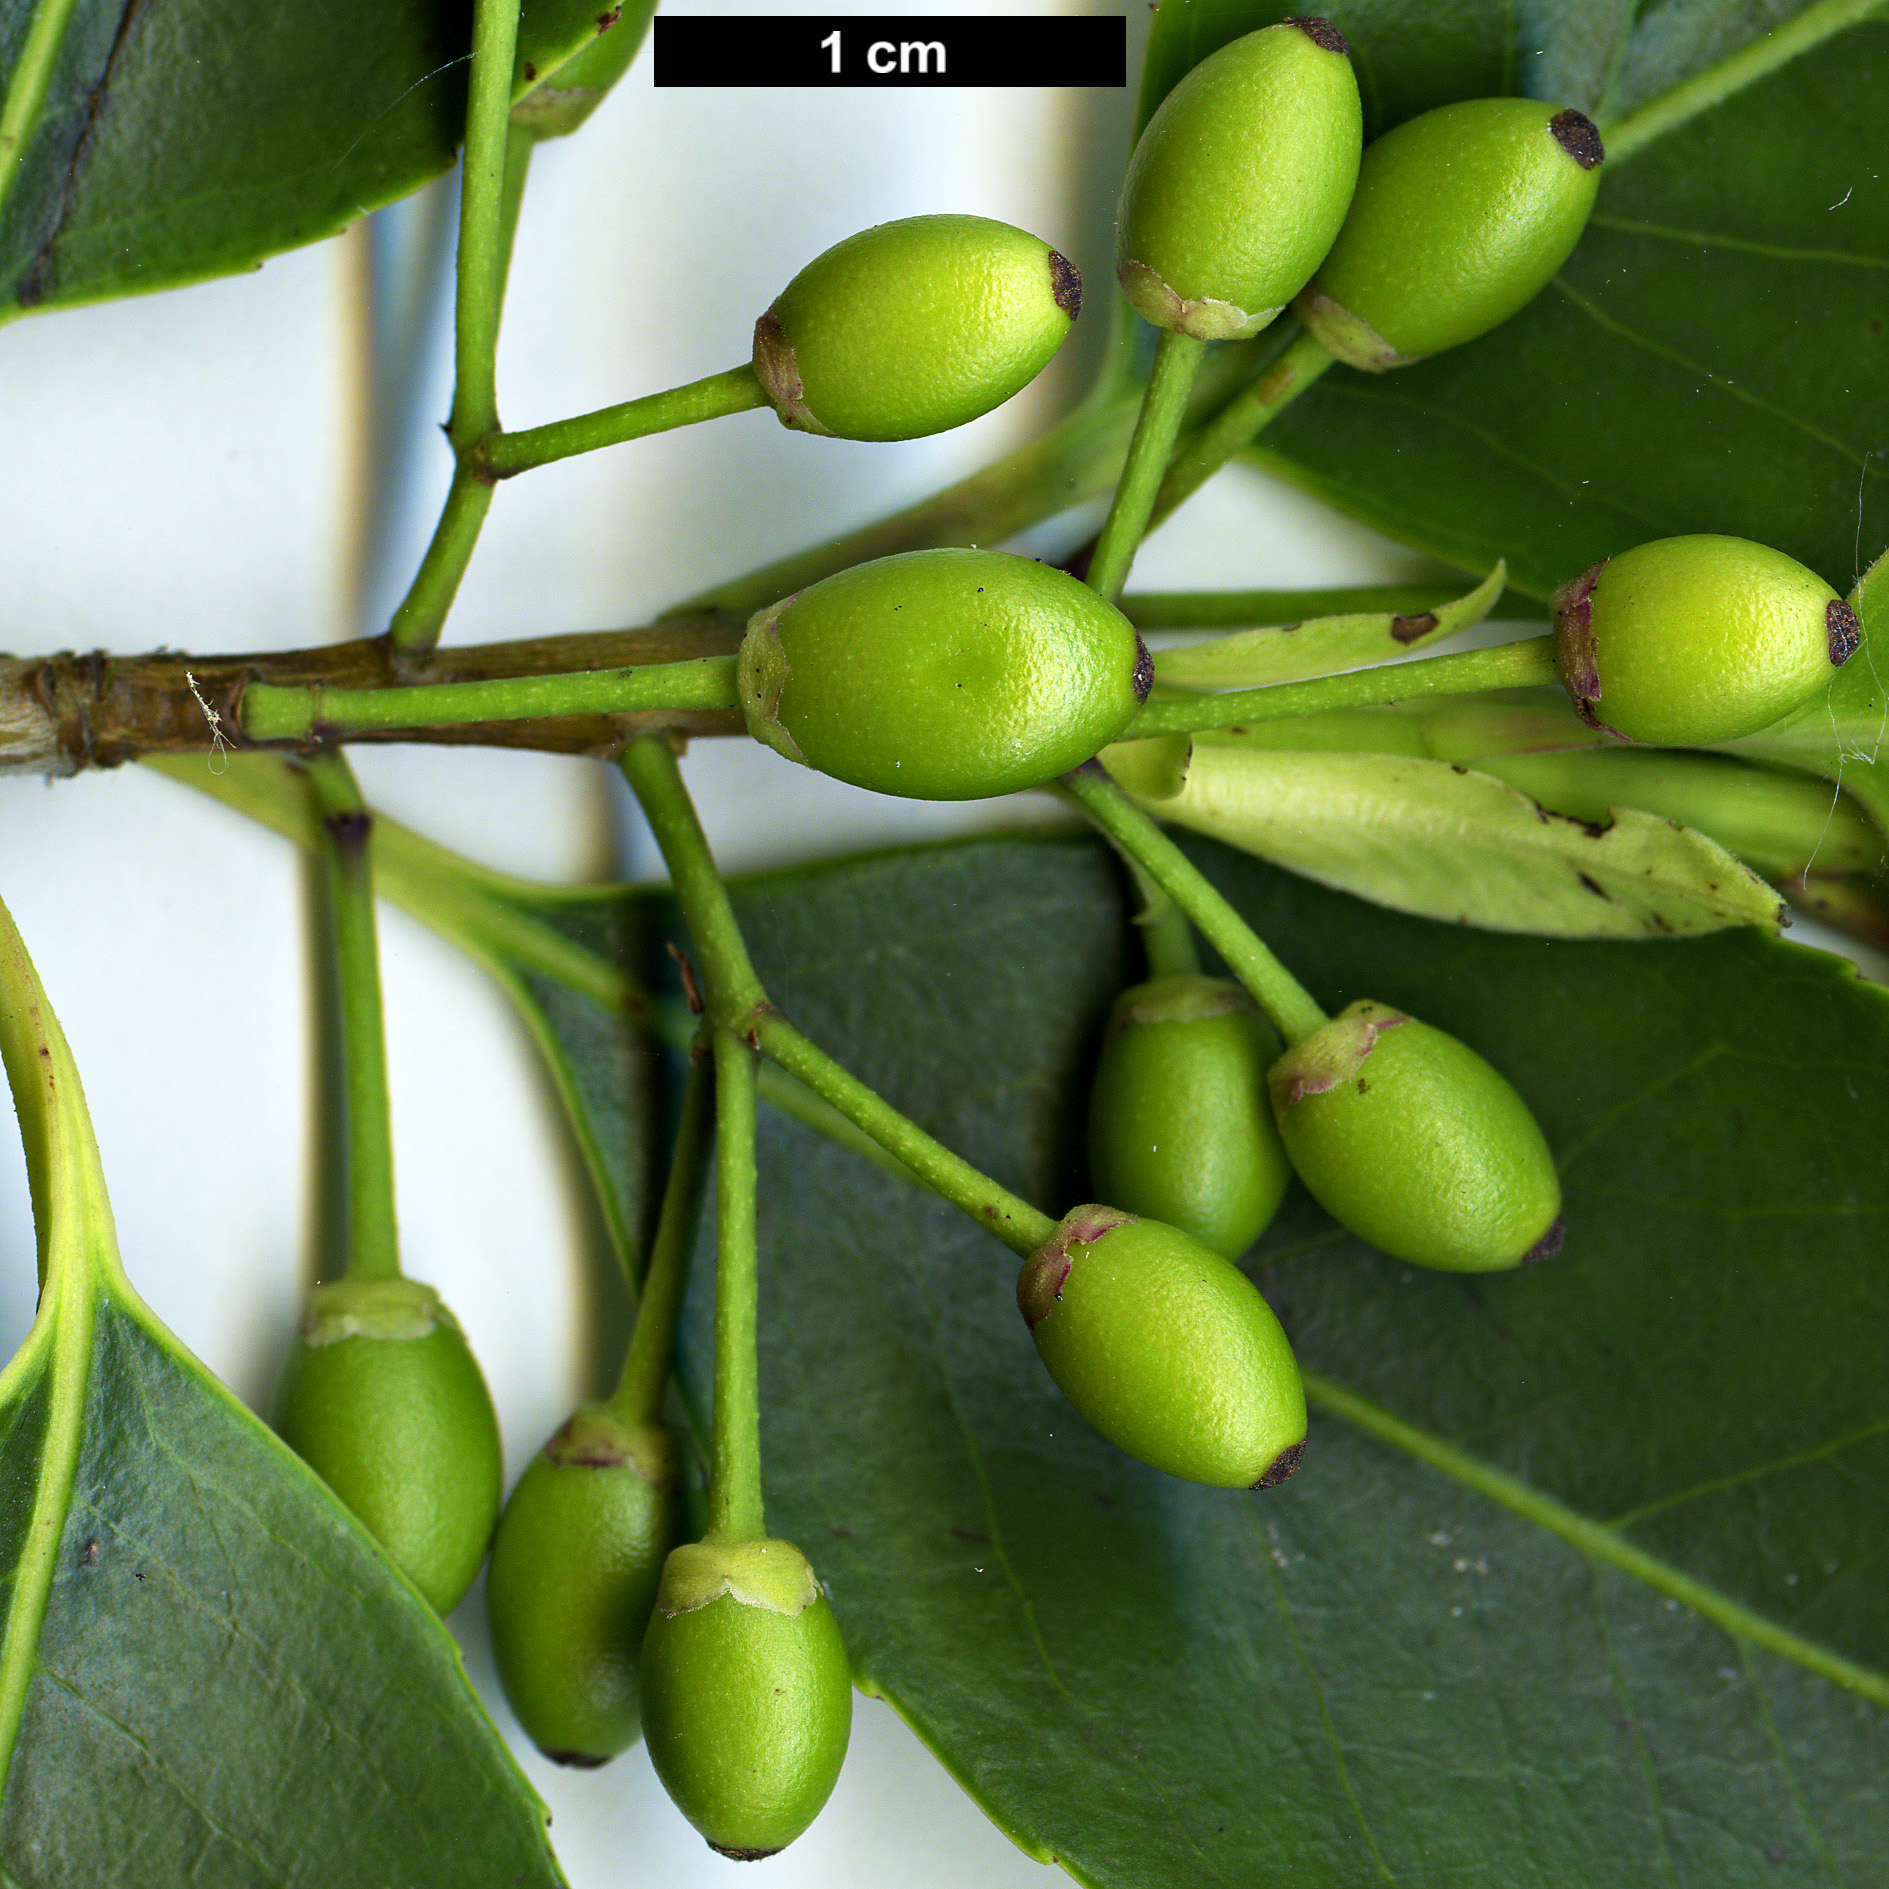 High resolution image: Family: Aquifoliaceae - Genus: Ilex - Taxon: purpurea